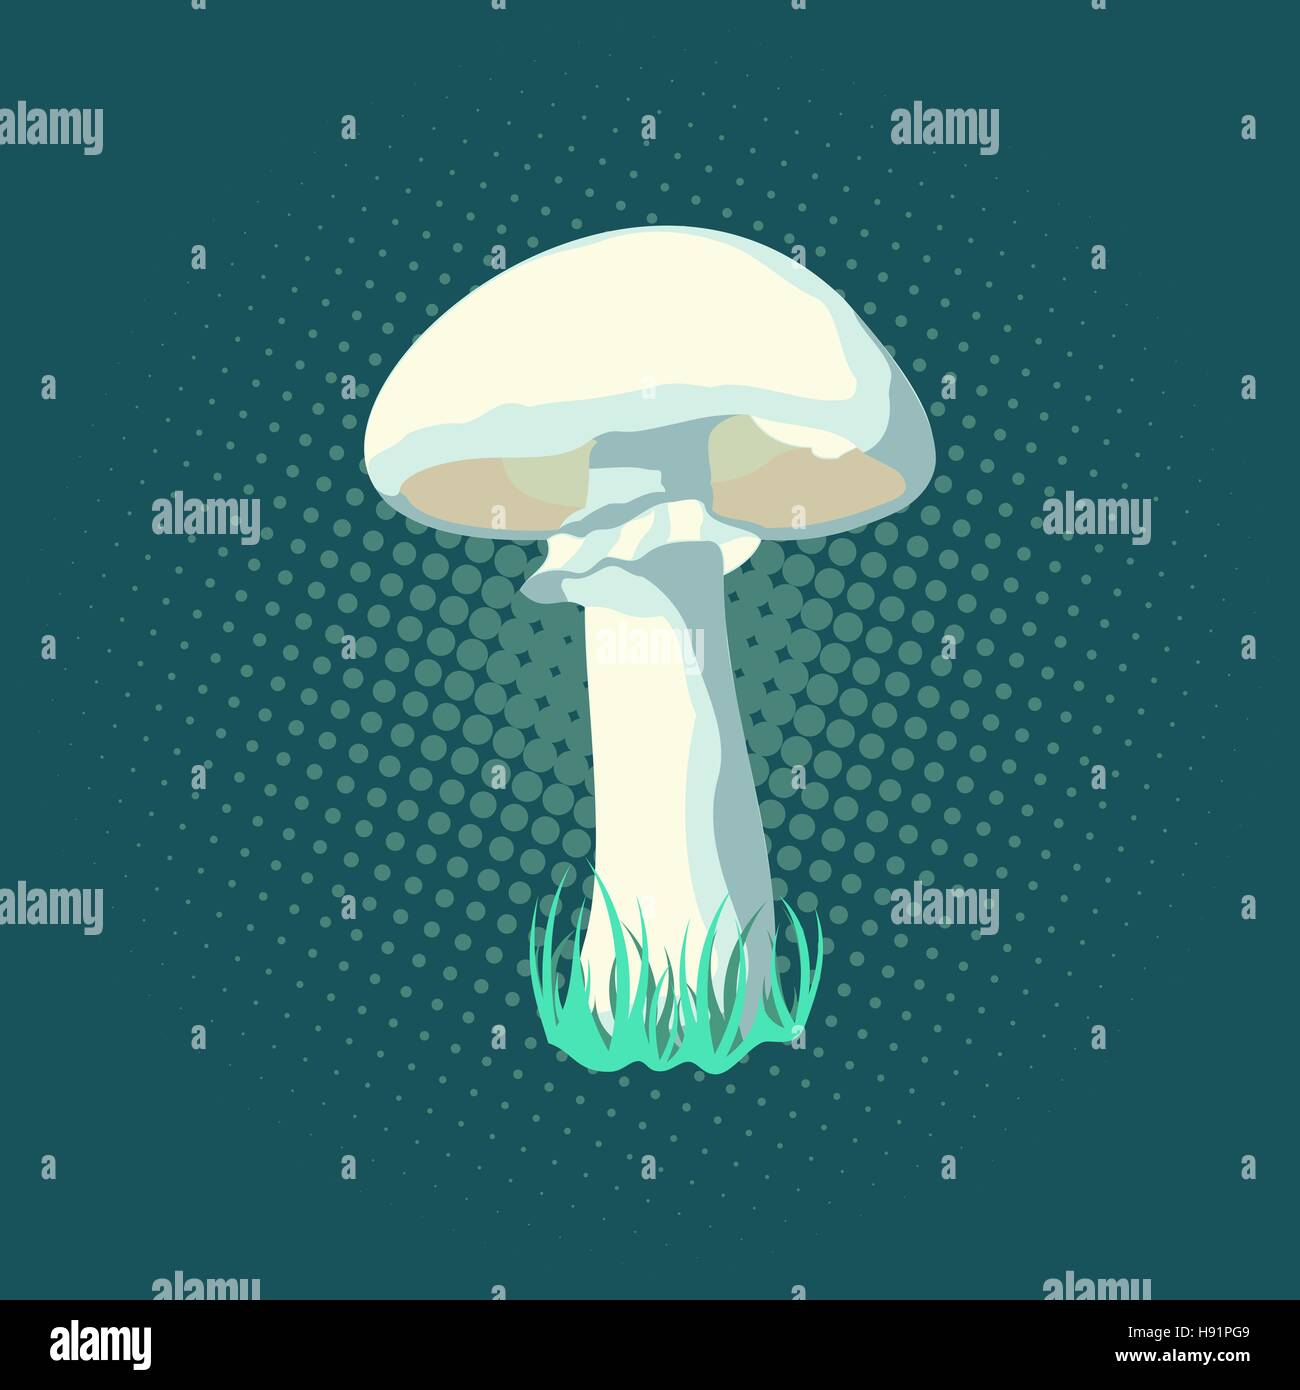 Vector illustration of mushroom, pop art retro illustration. Stock Vector